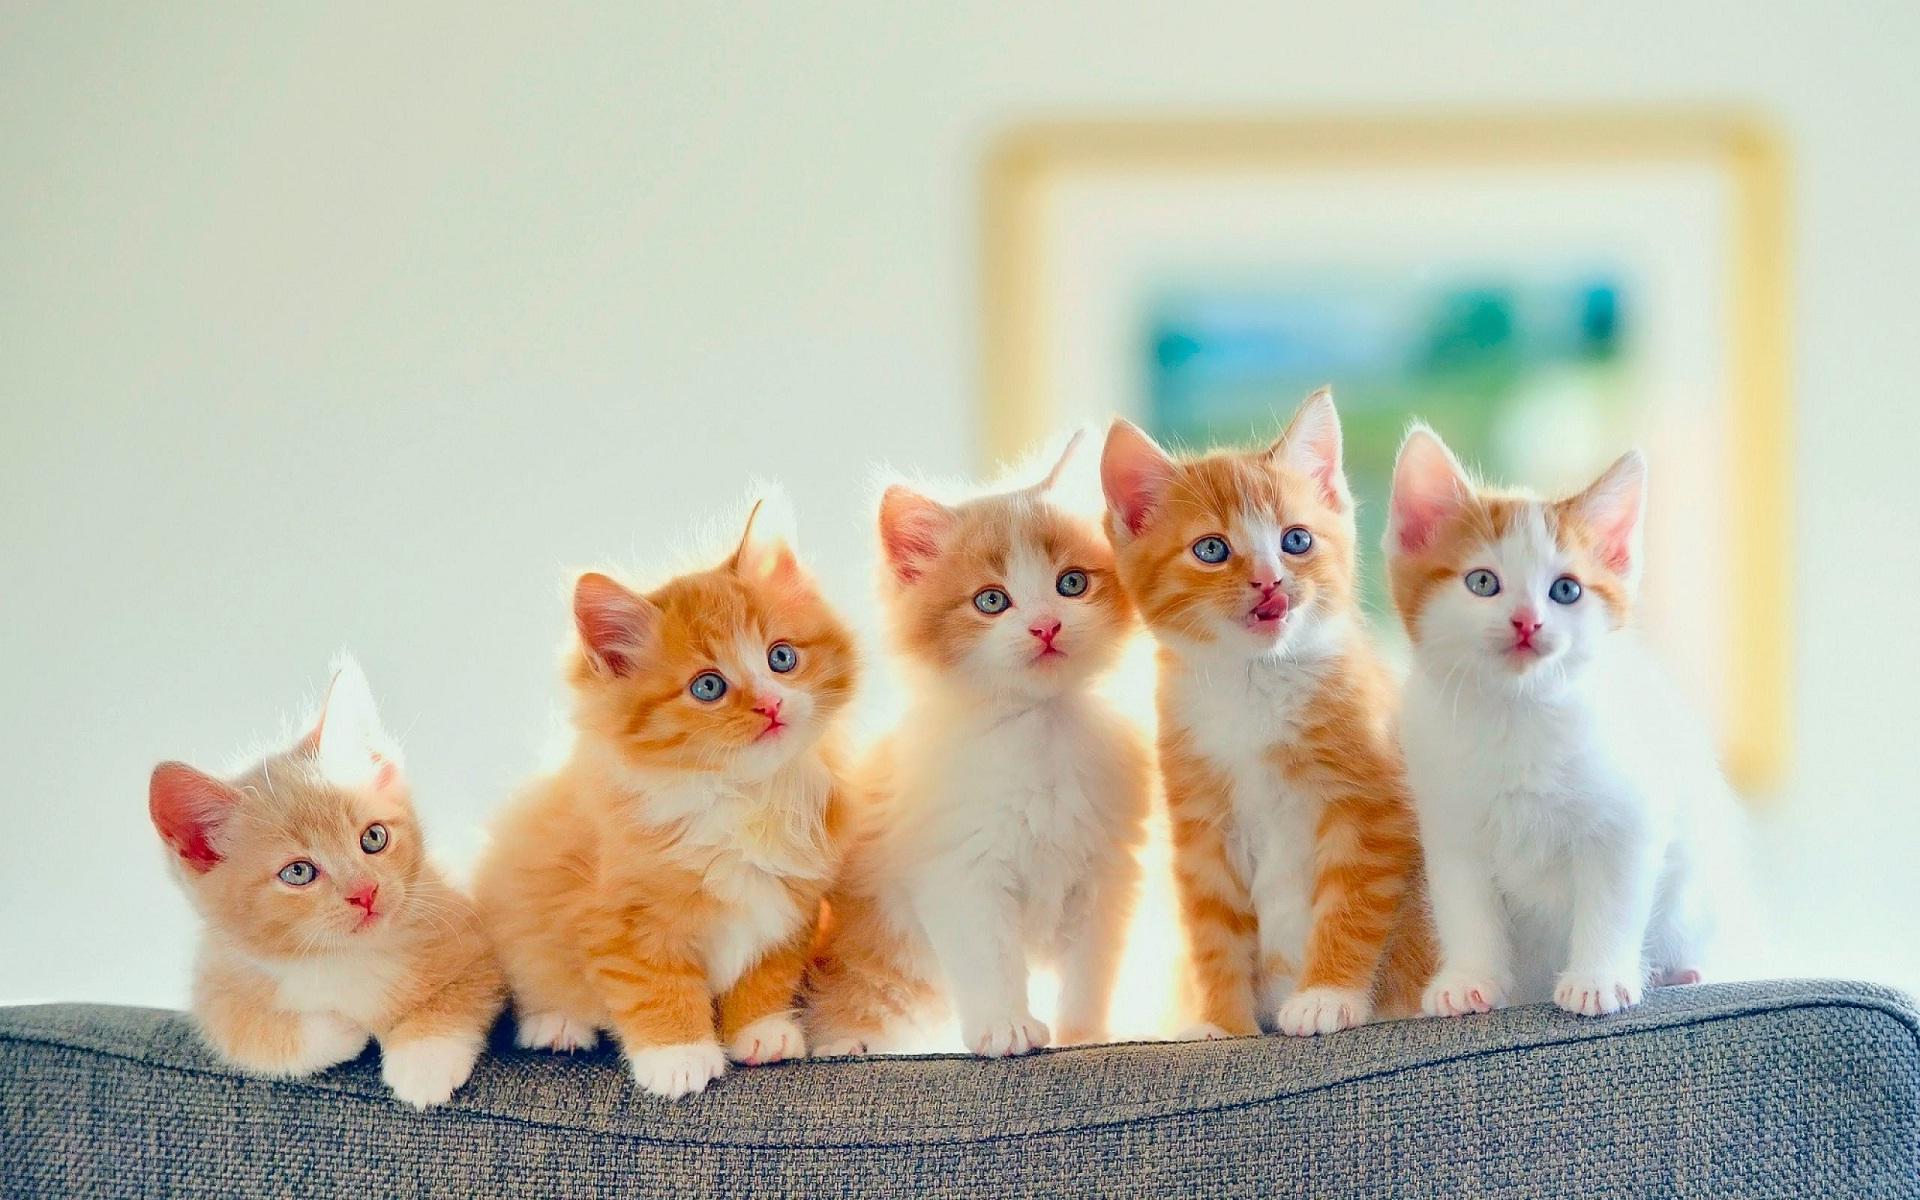 Cute xỉu ảnh hình nền đẹp nhất về các chú mèo